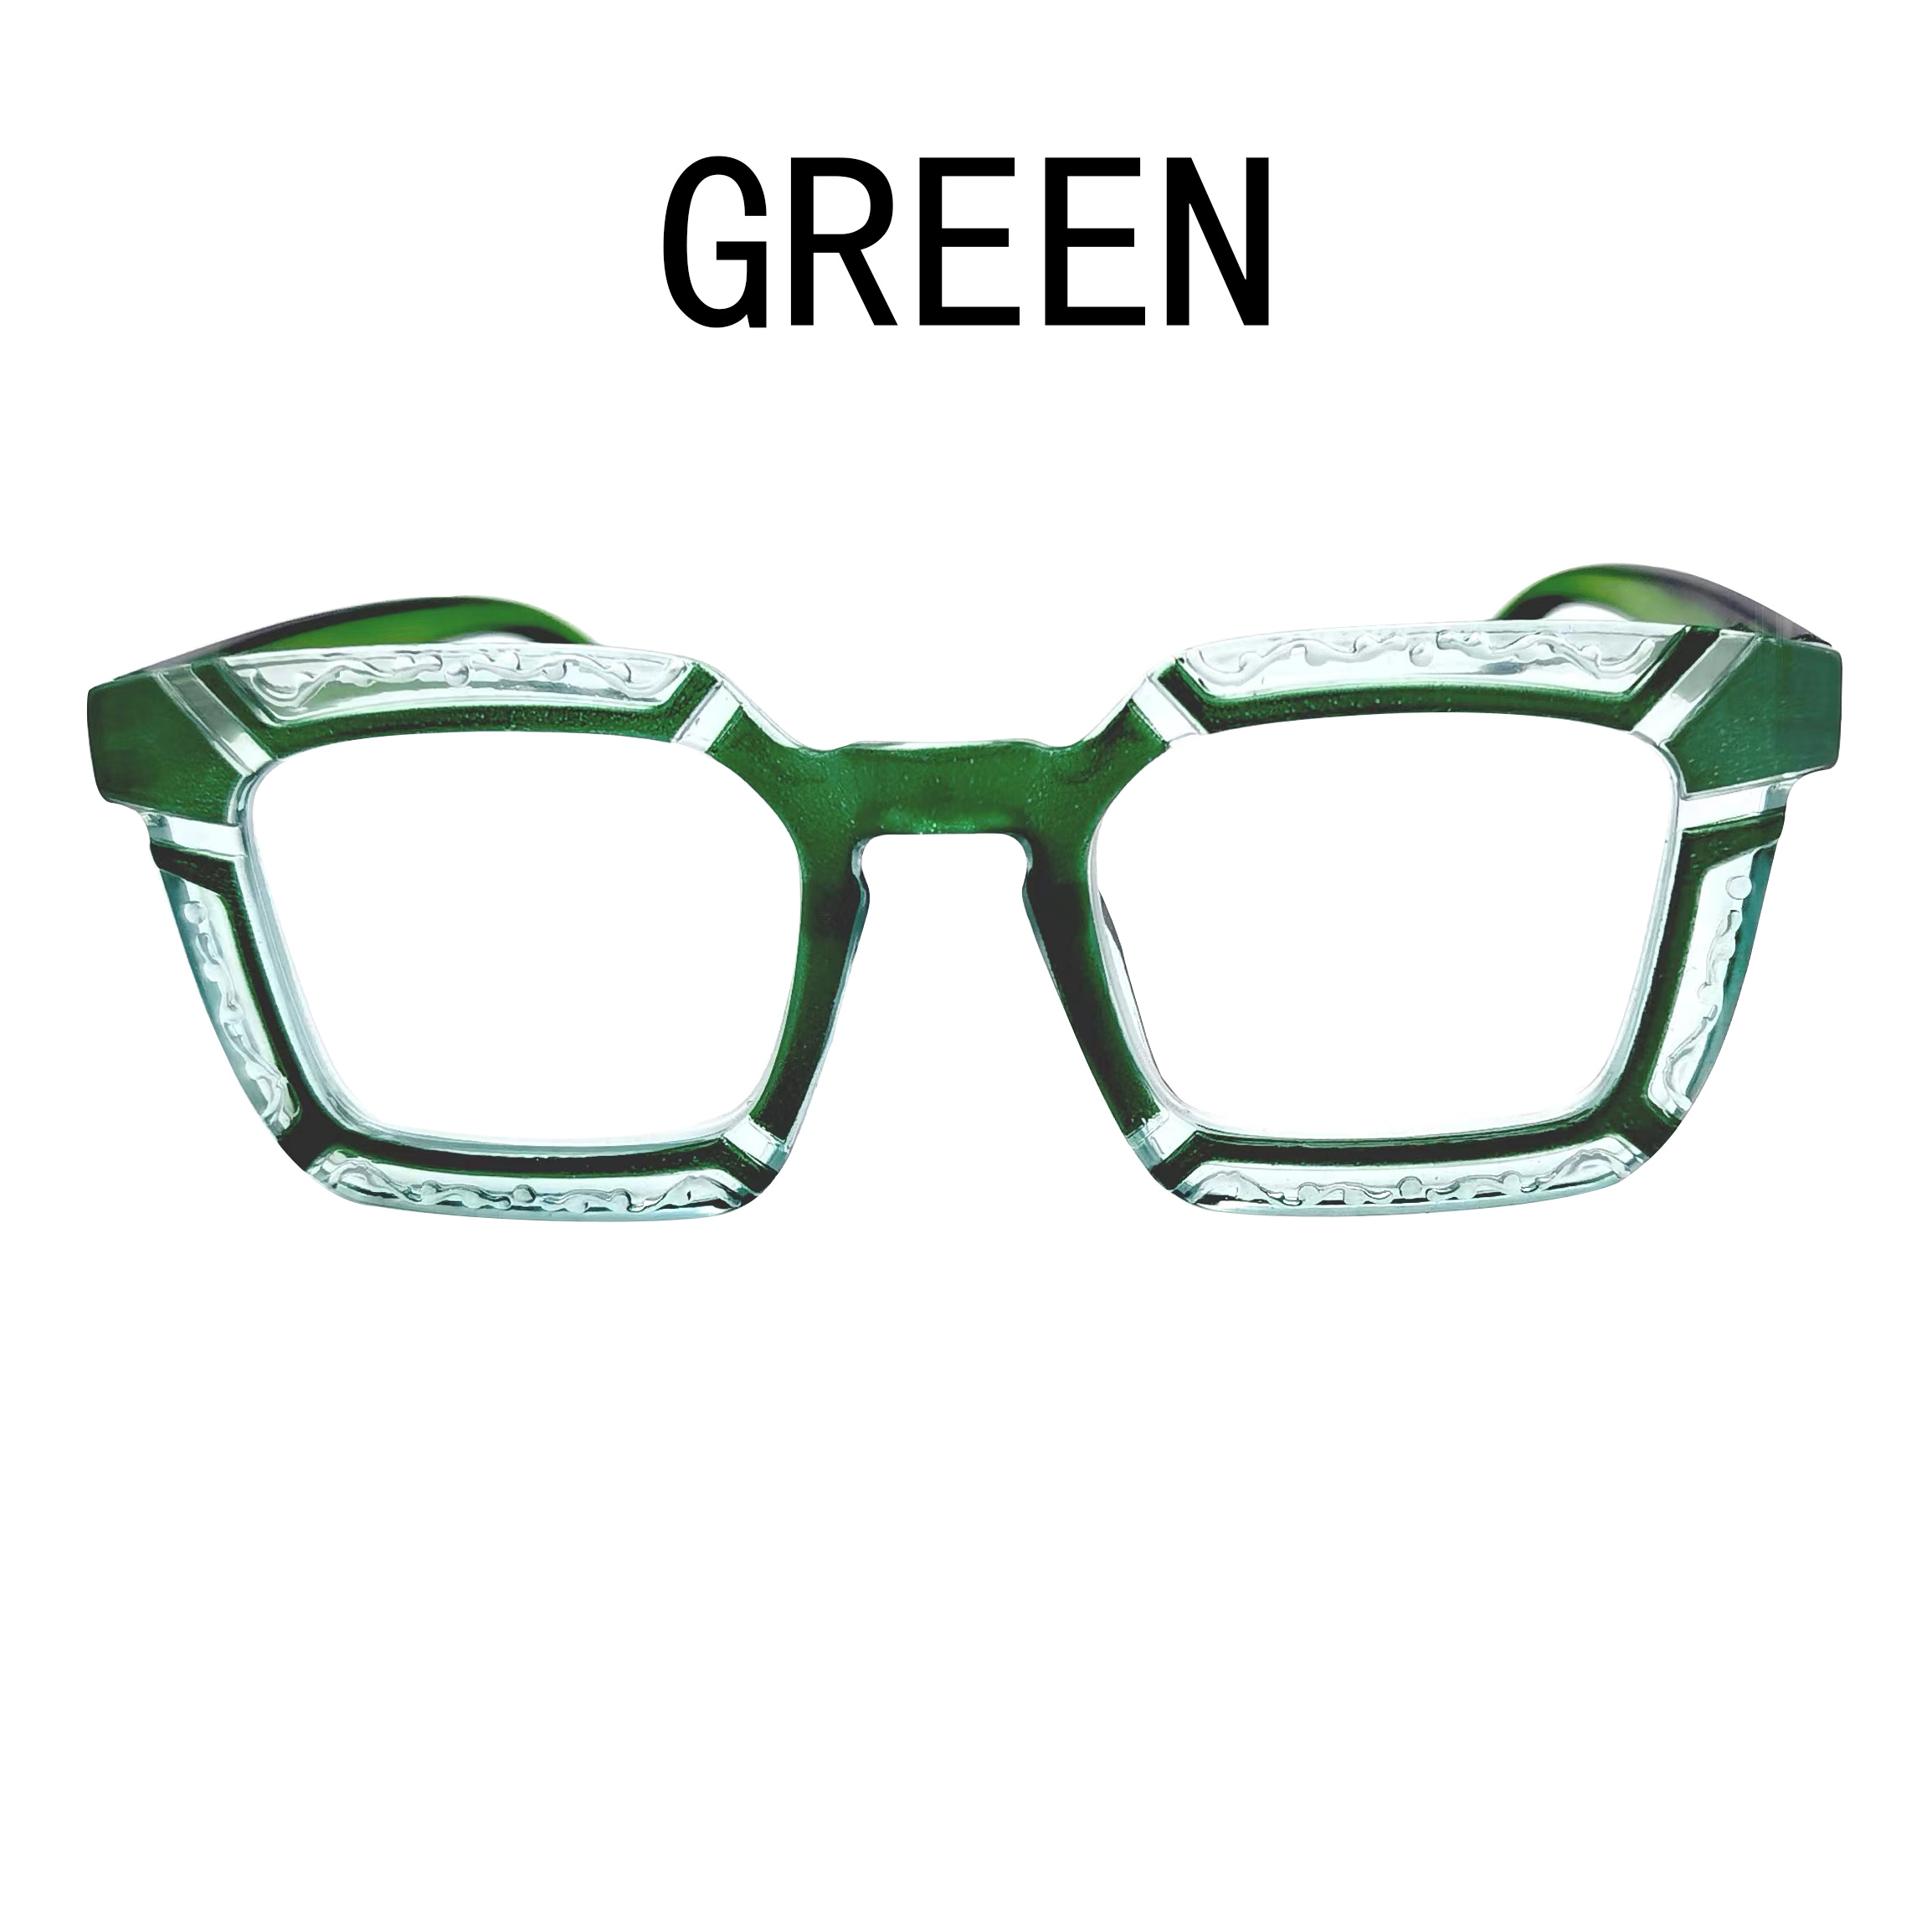 Farmacia Barroso - ¿Ya conoces las gafas de presbicia de Nordic Vision? Sus  diseños de gafas están adaptados a las últimas tendencias del mercado y de  la moda, siempre pensando en la